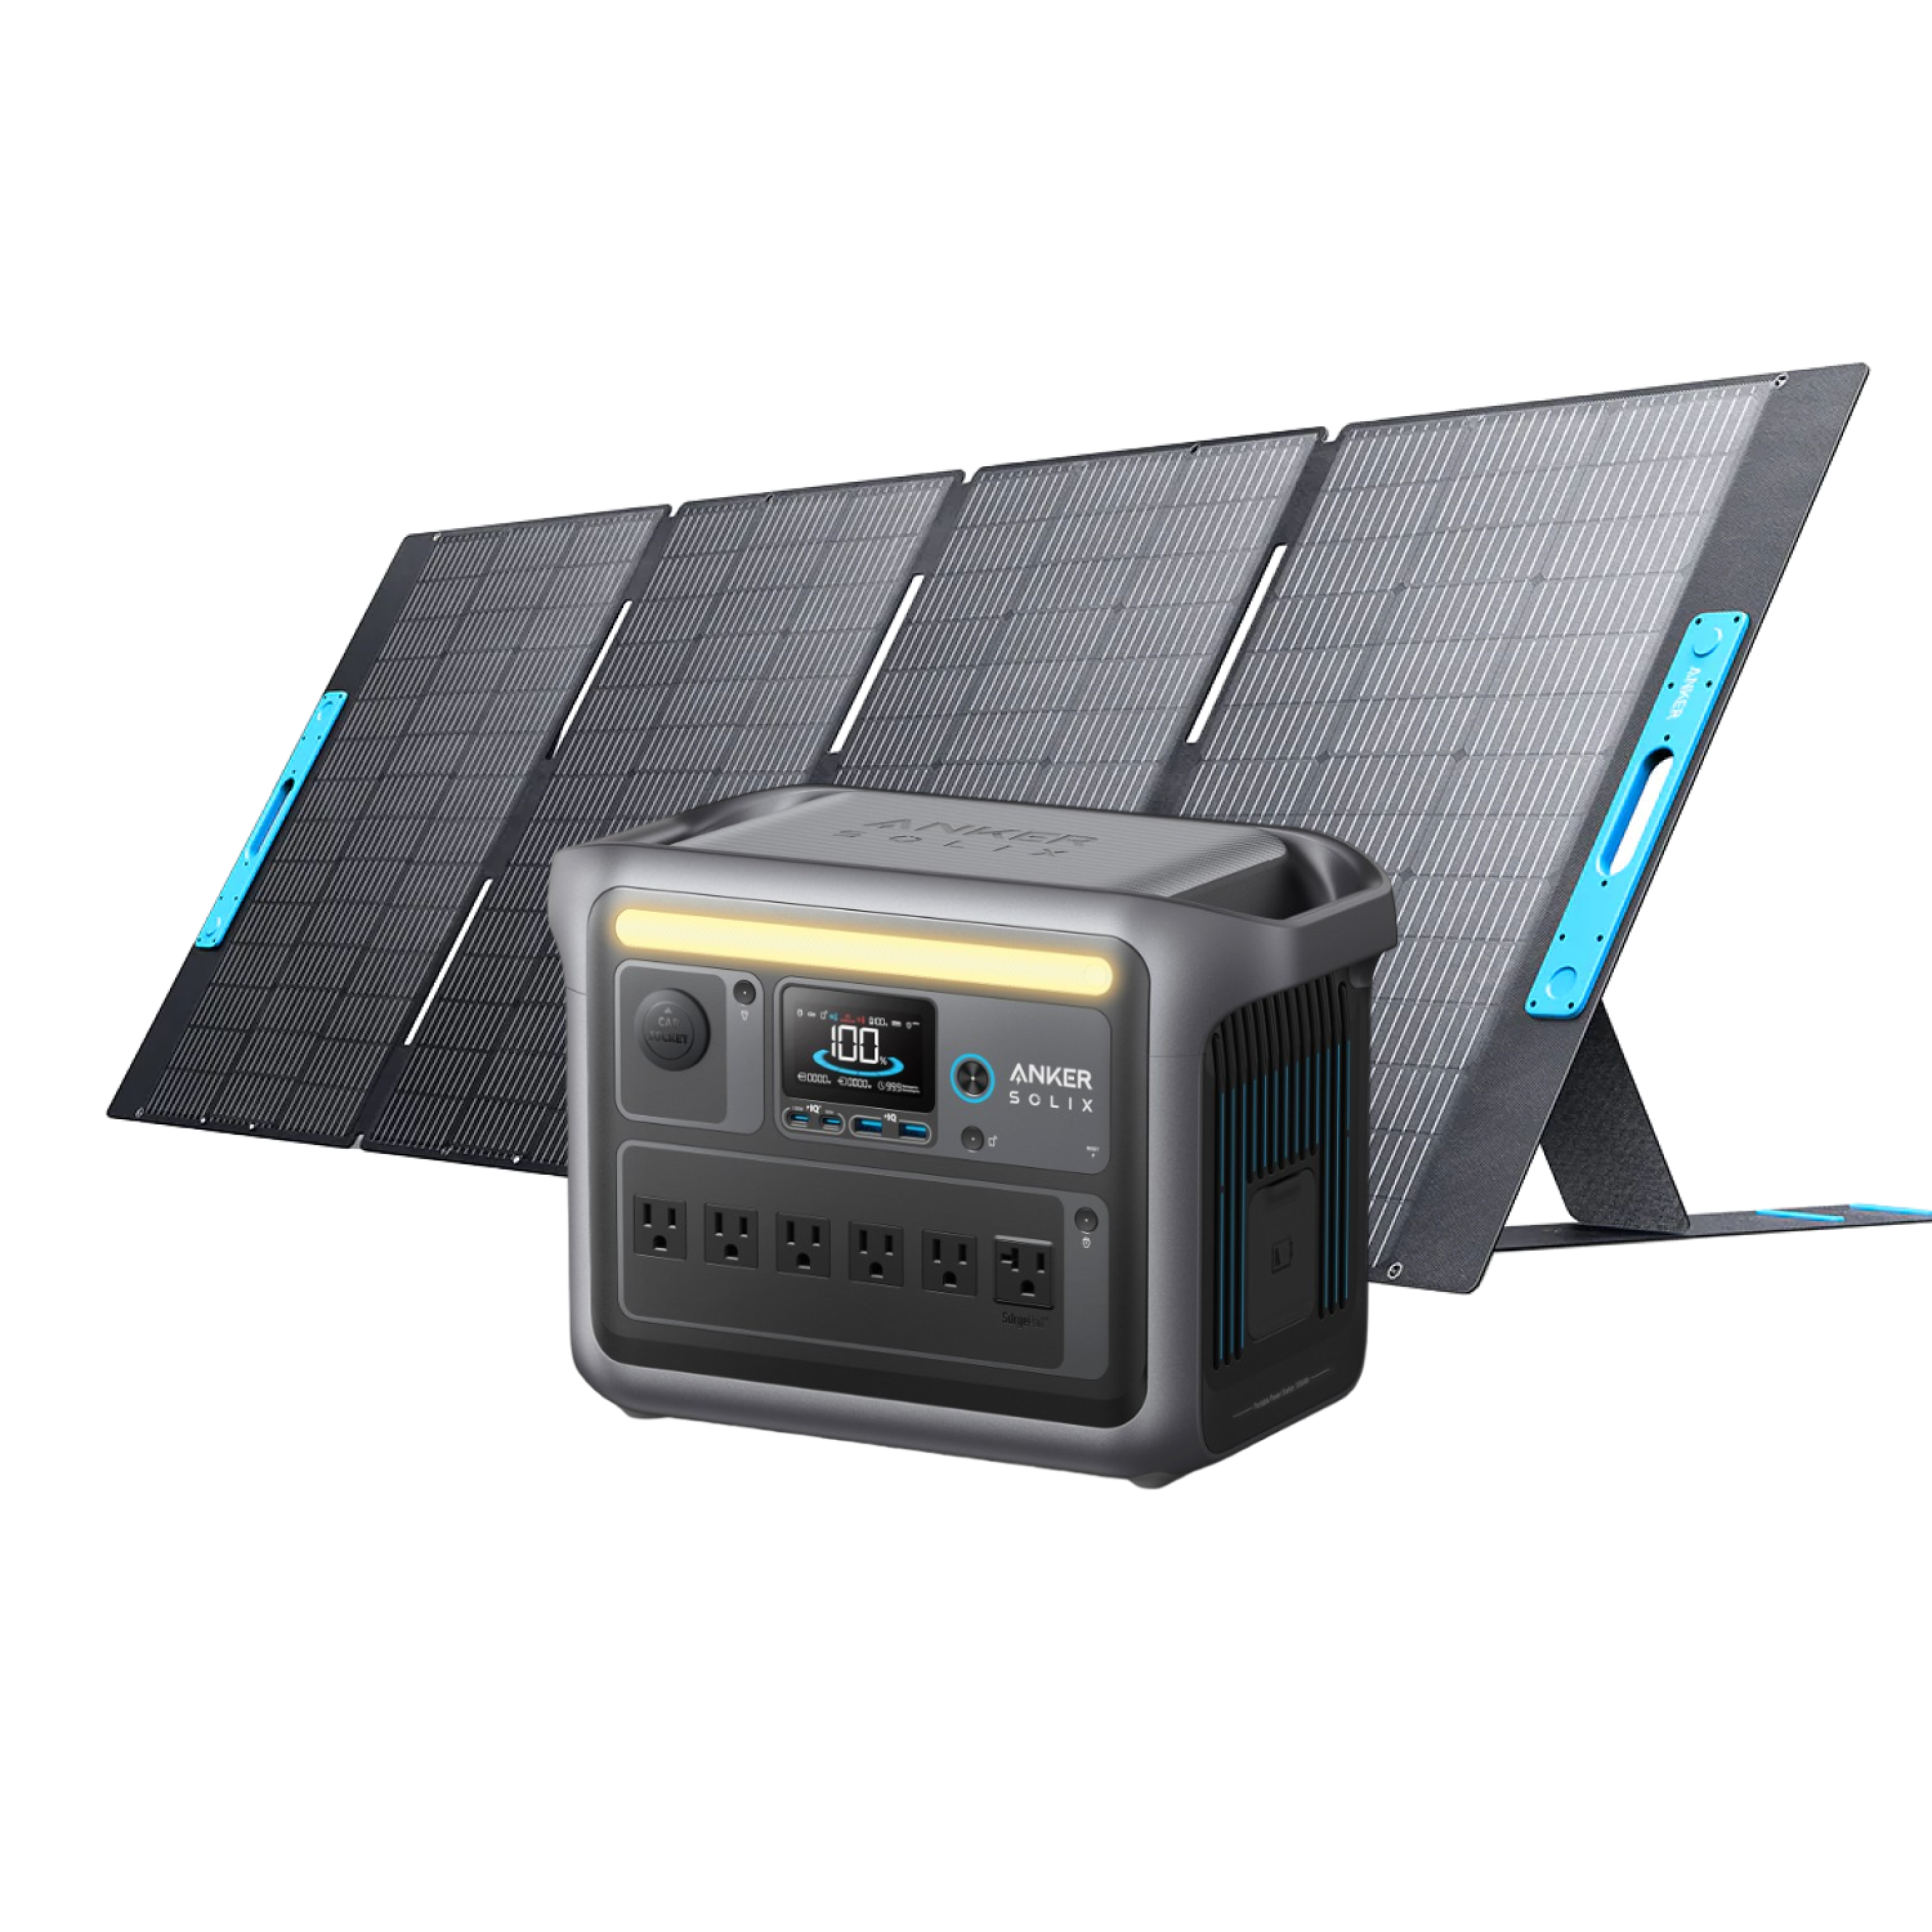 Anker SOLIX <b>C1000</b> Solar Generator + 400W Solar Panel